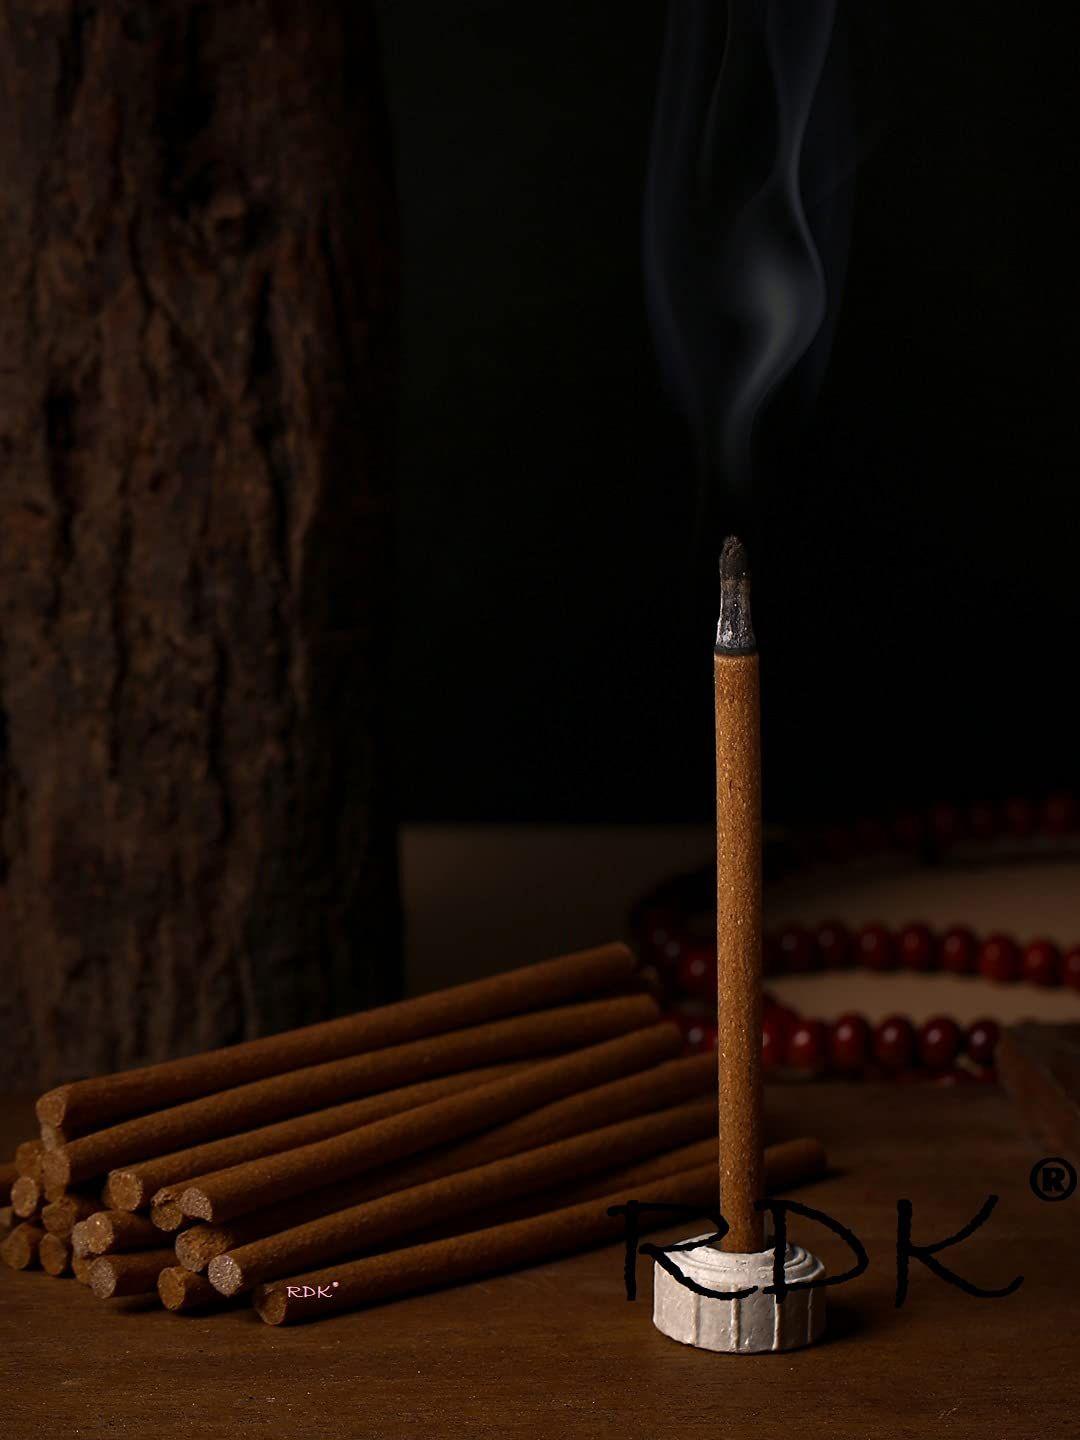 rdk pack of 100 gram natural sparkel fragrance beige incense sticks with holder